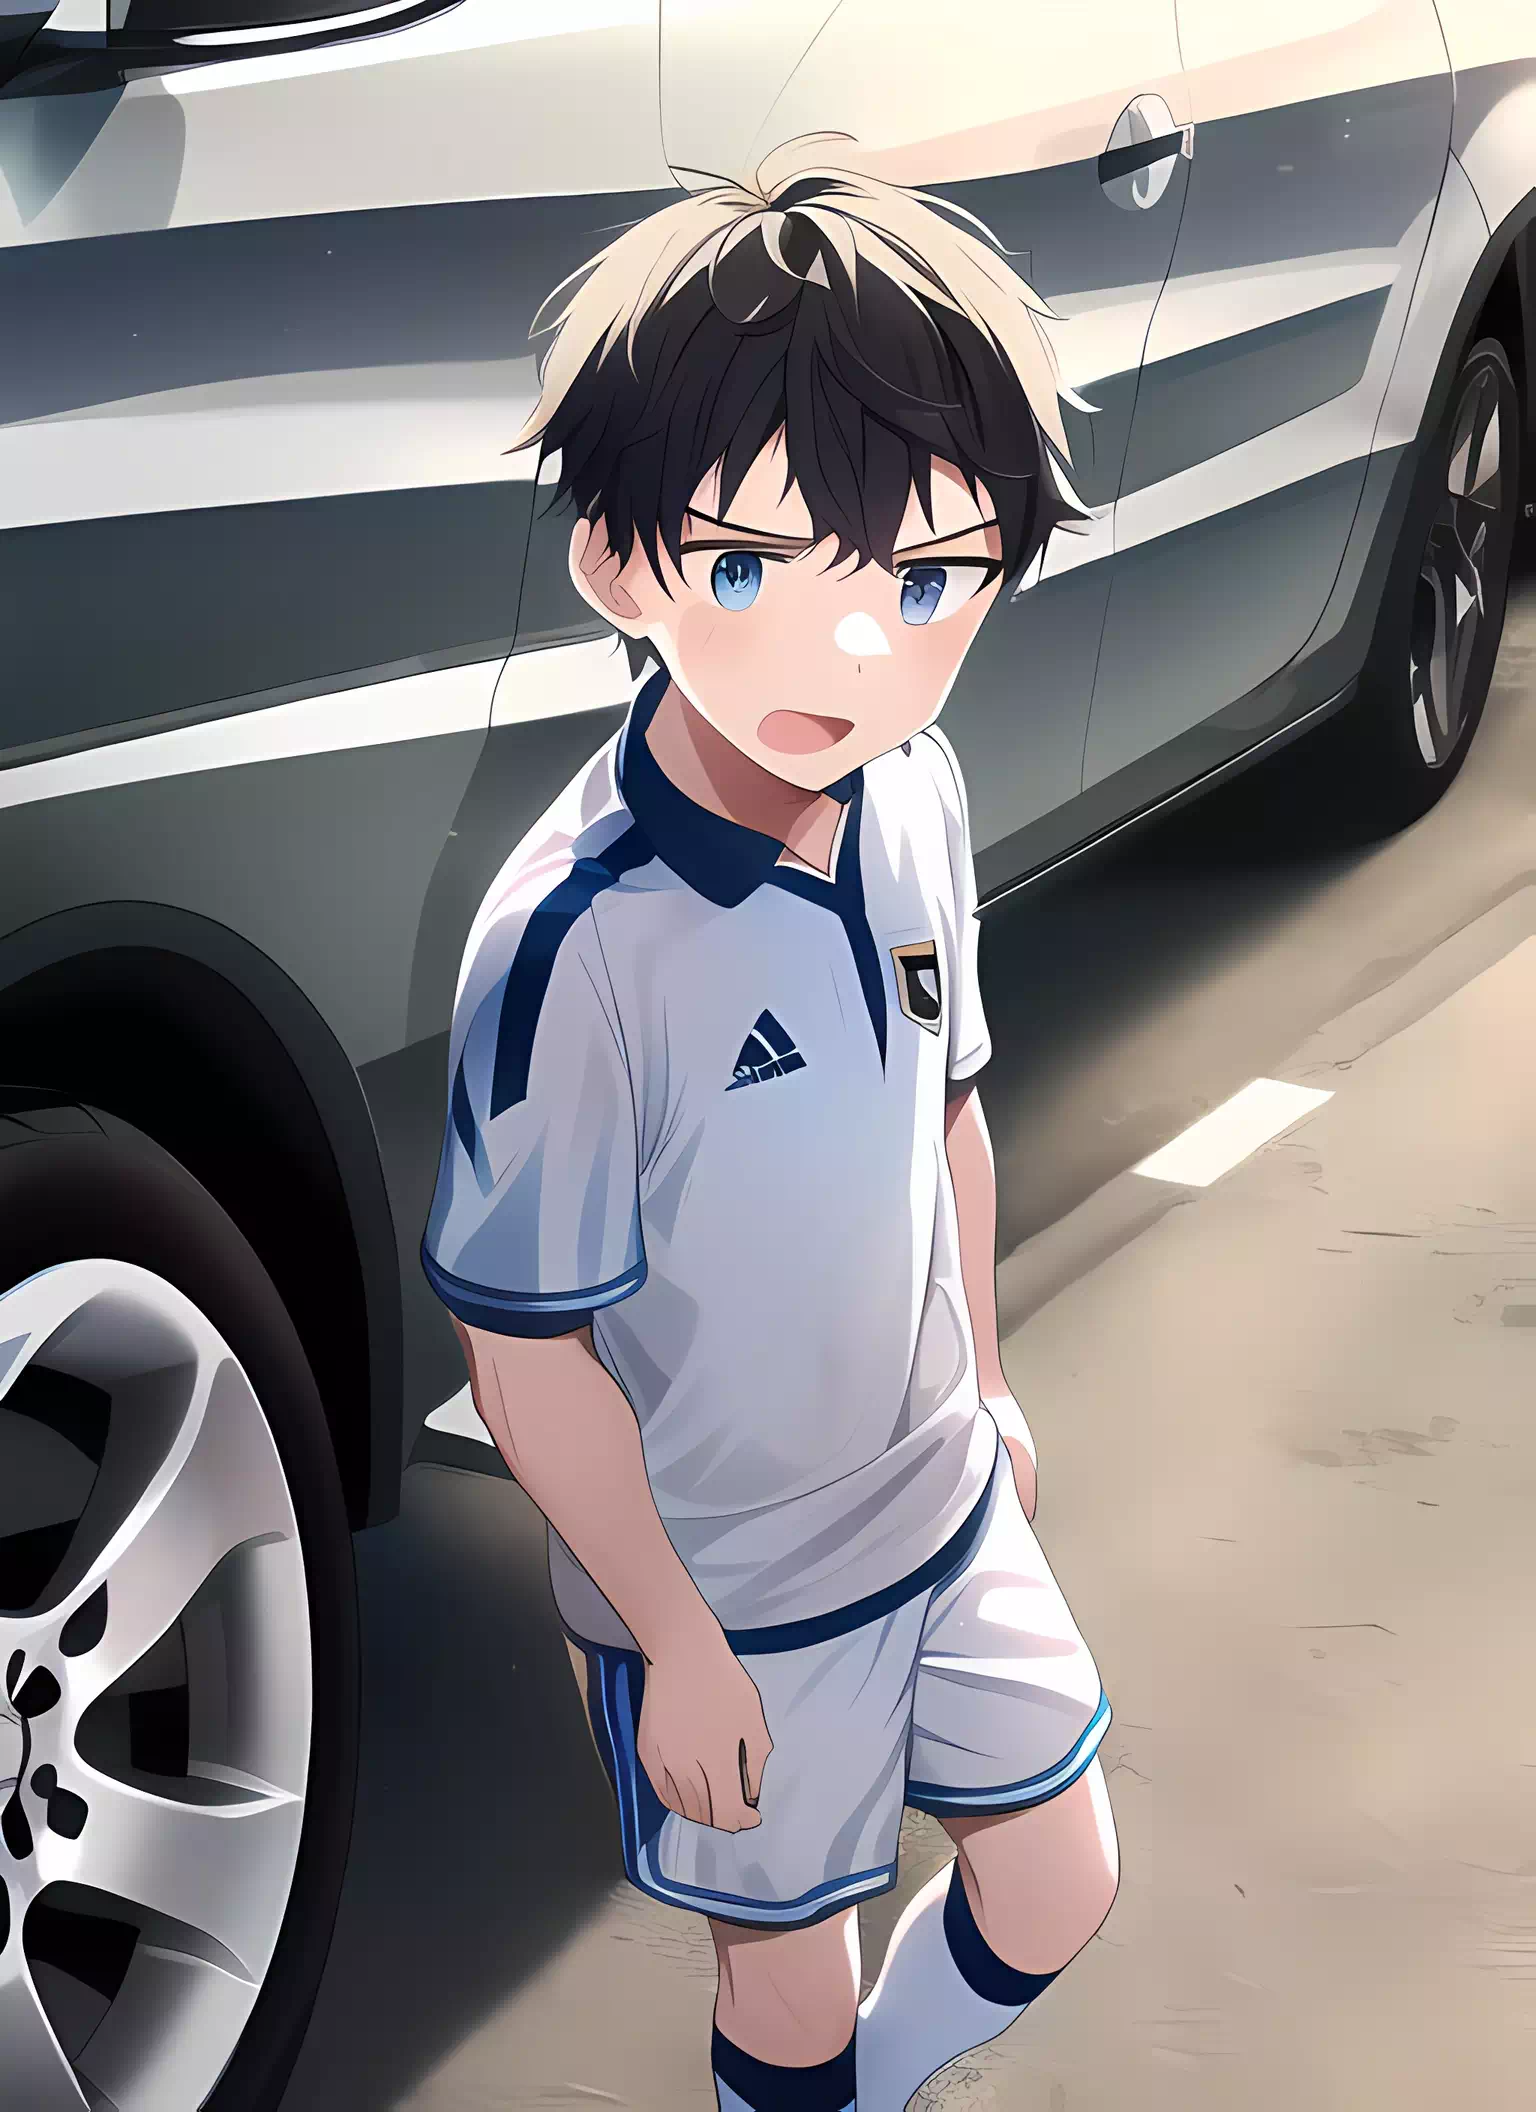 Soccer boy in a parking lot